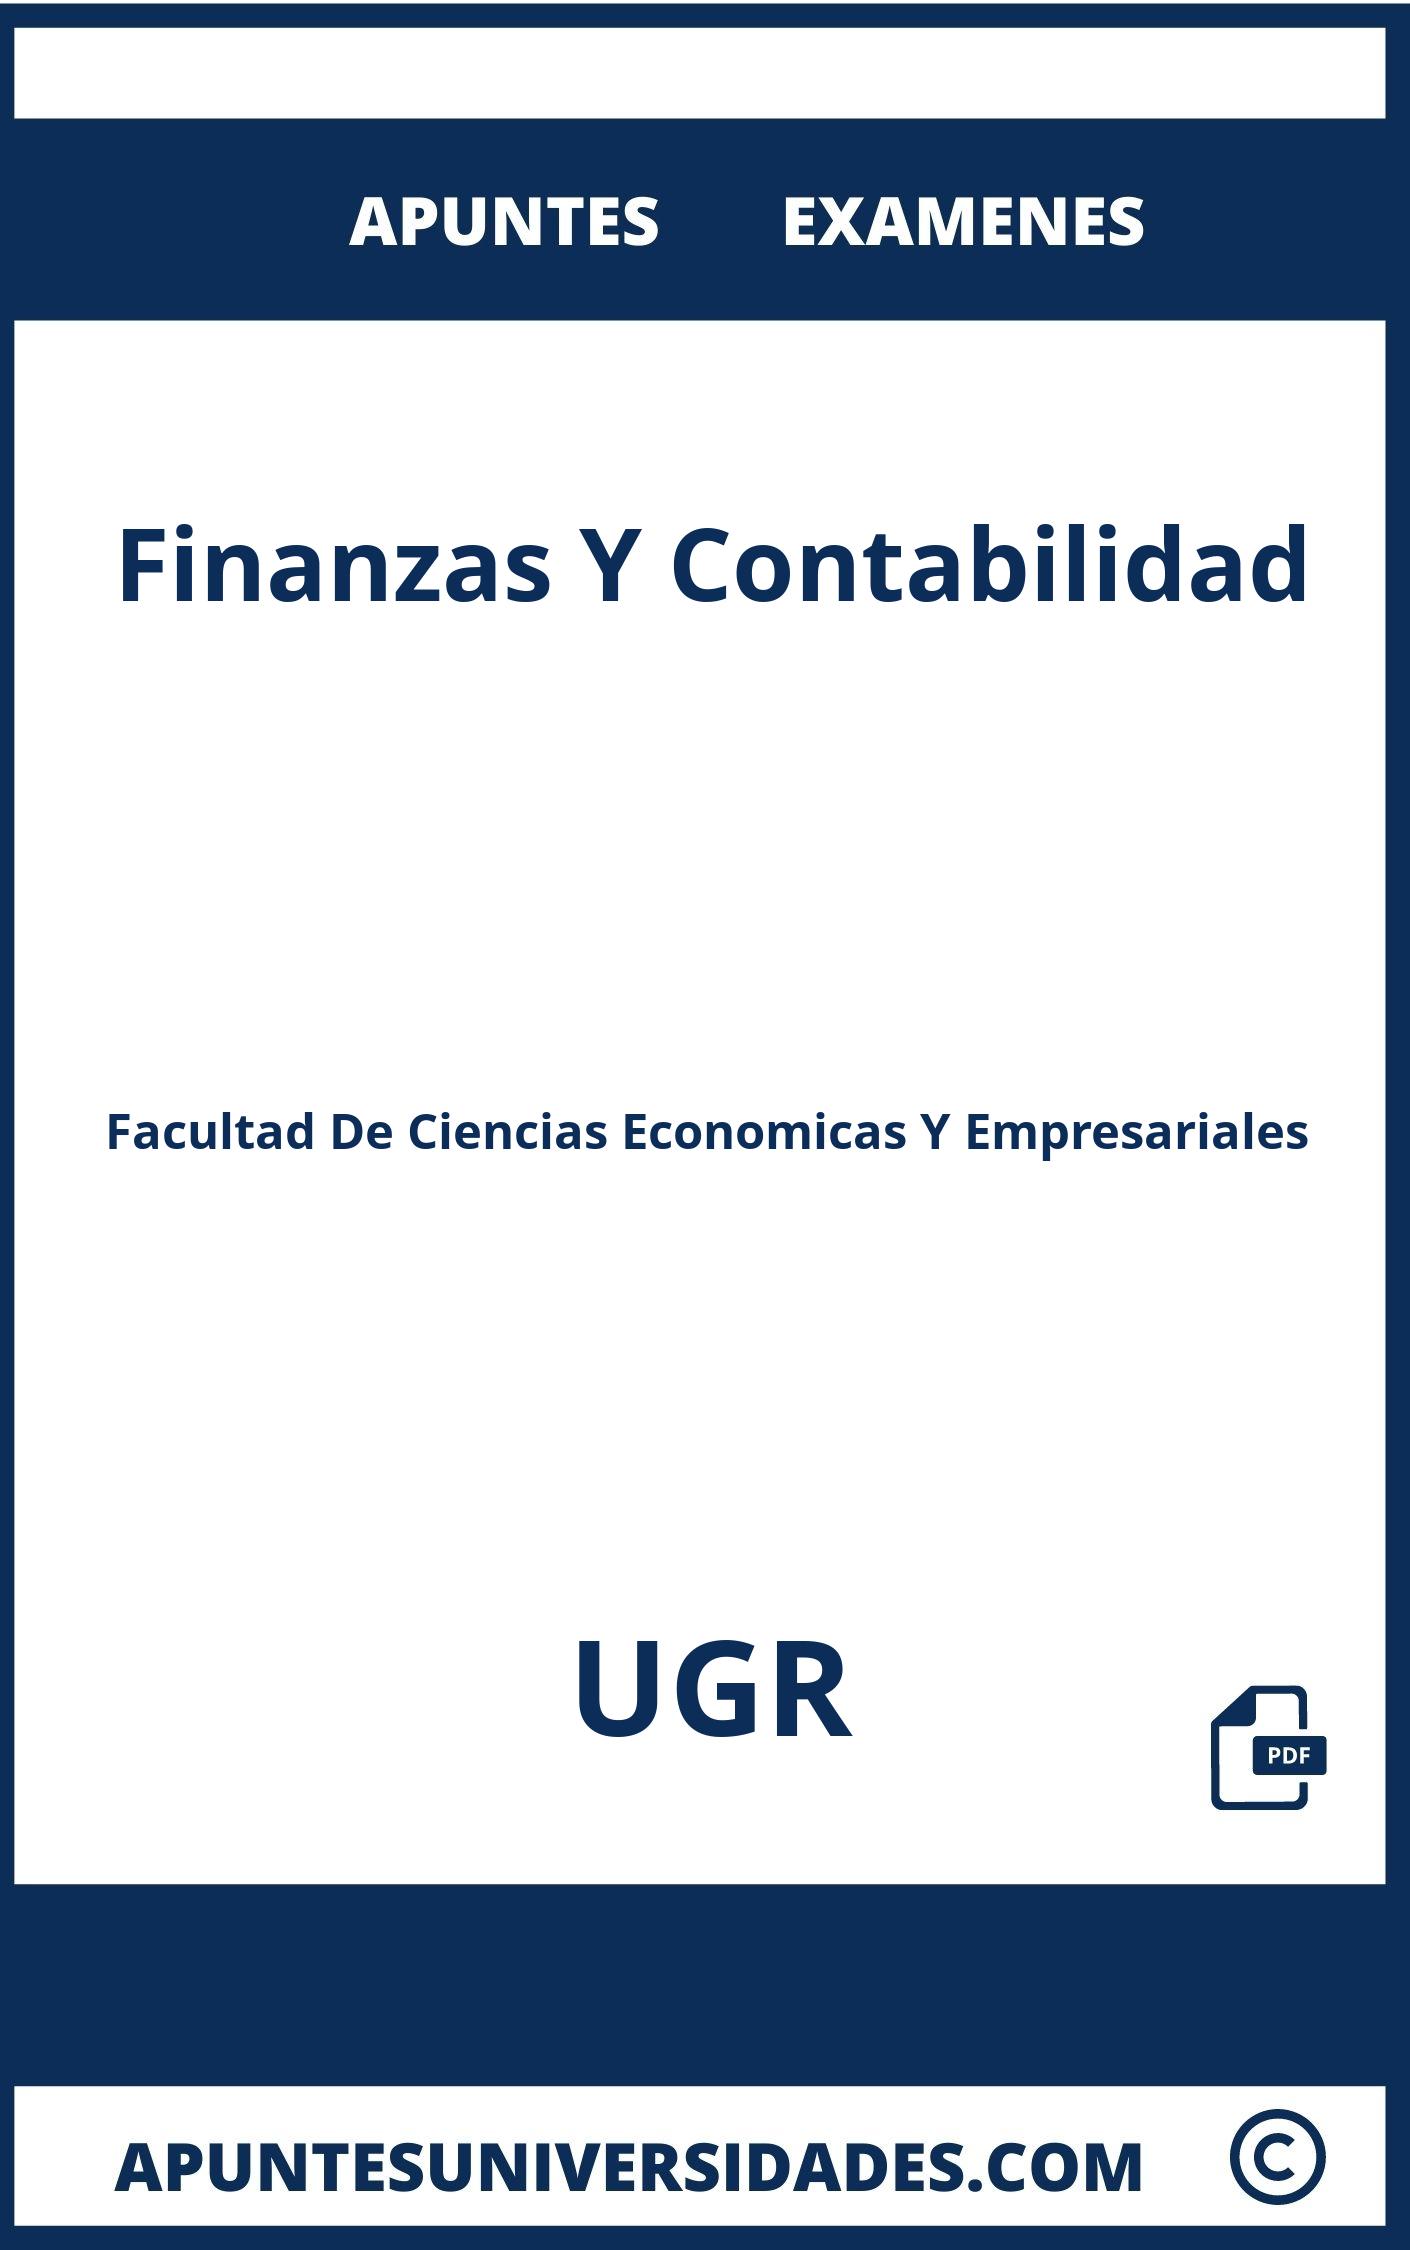 Apuntes Finanzas Y Contabilidad UGR y Examenes